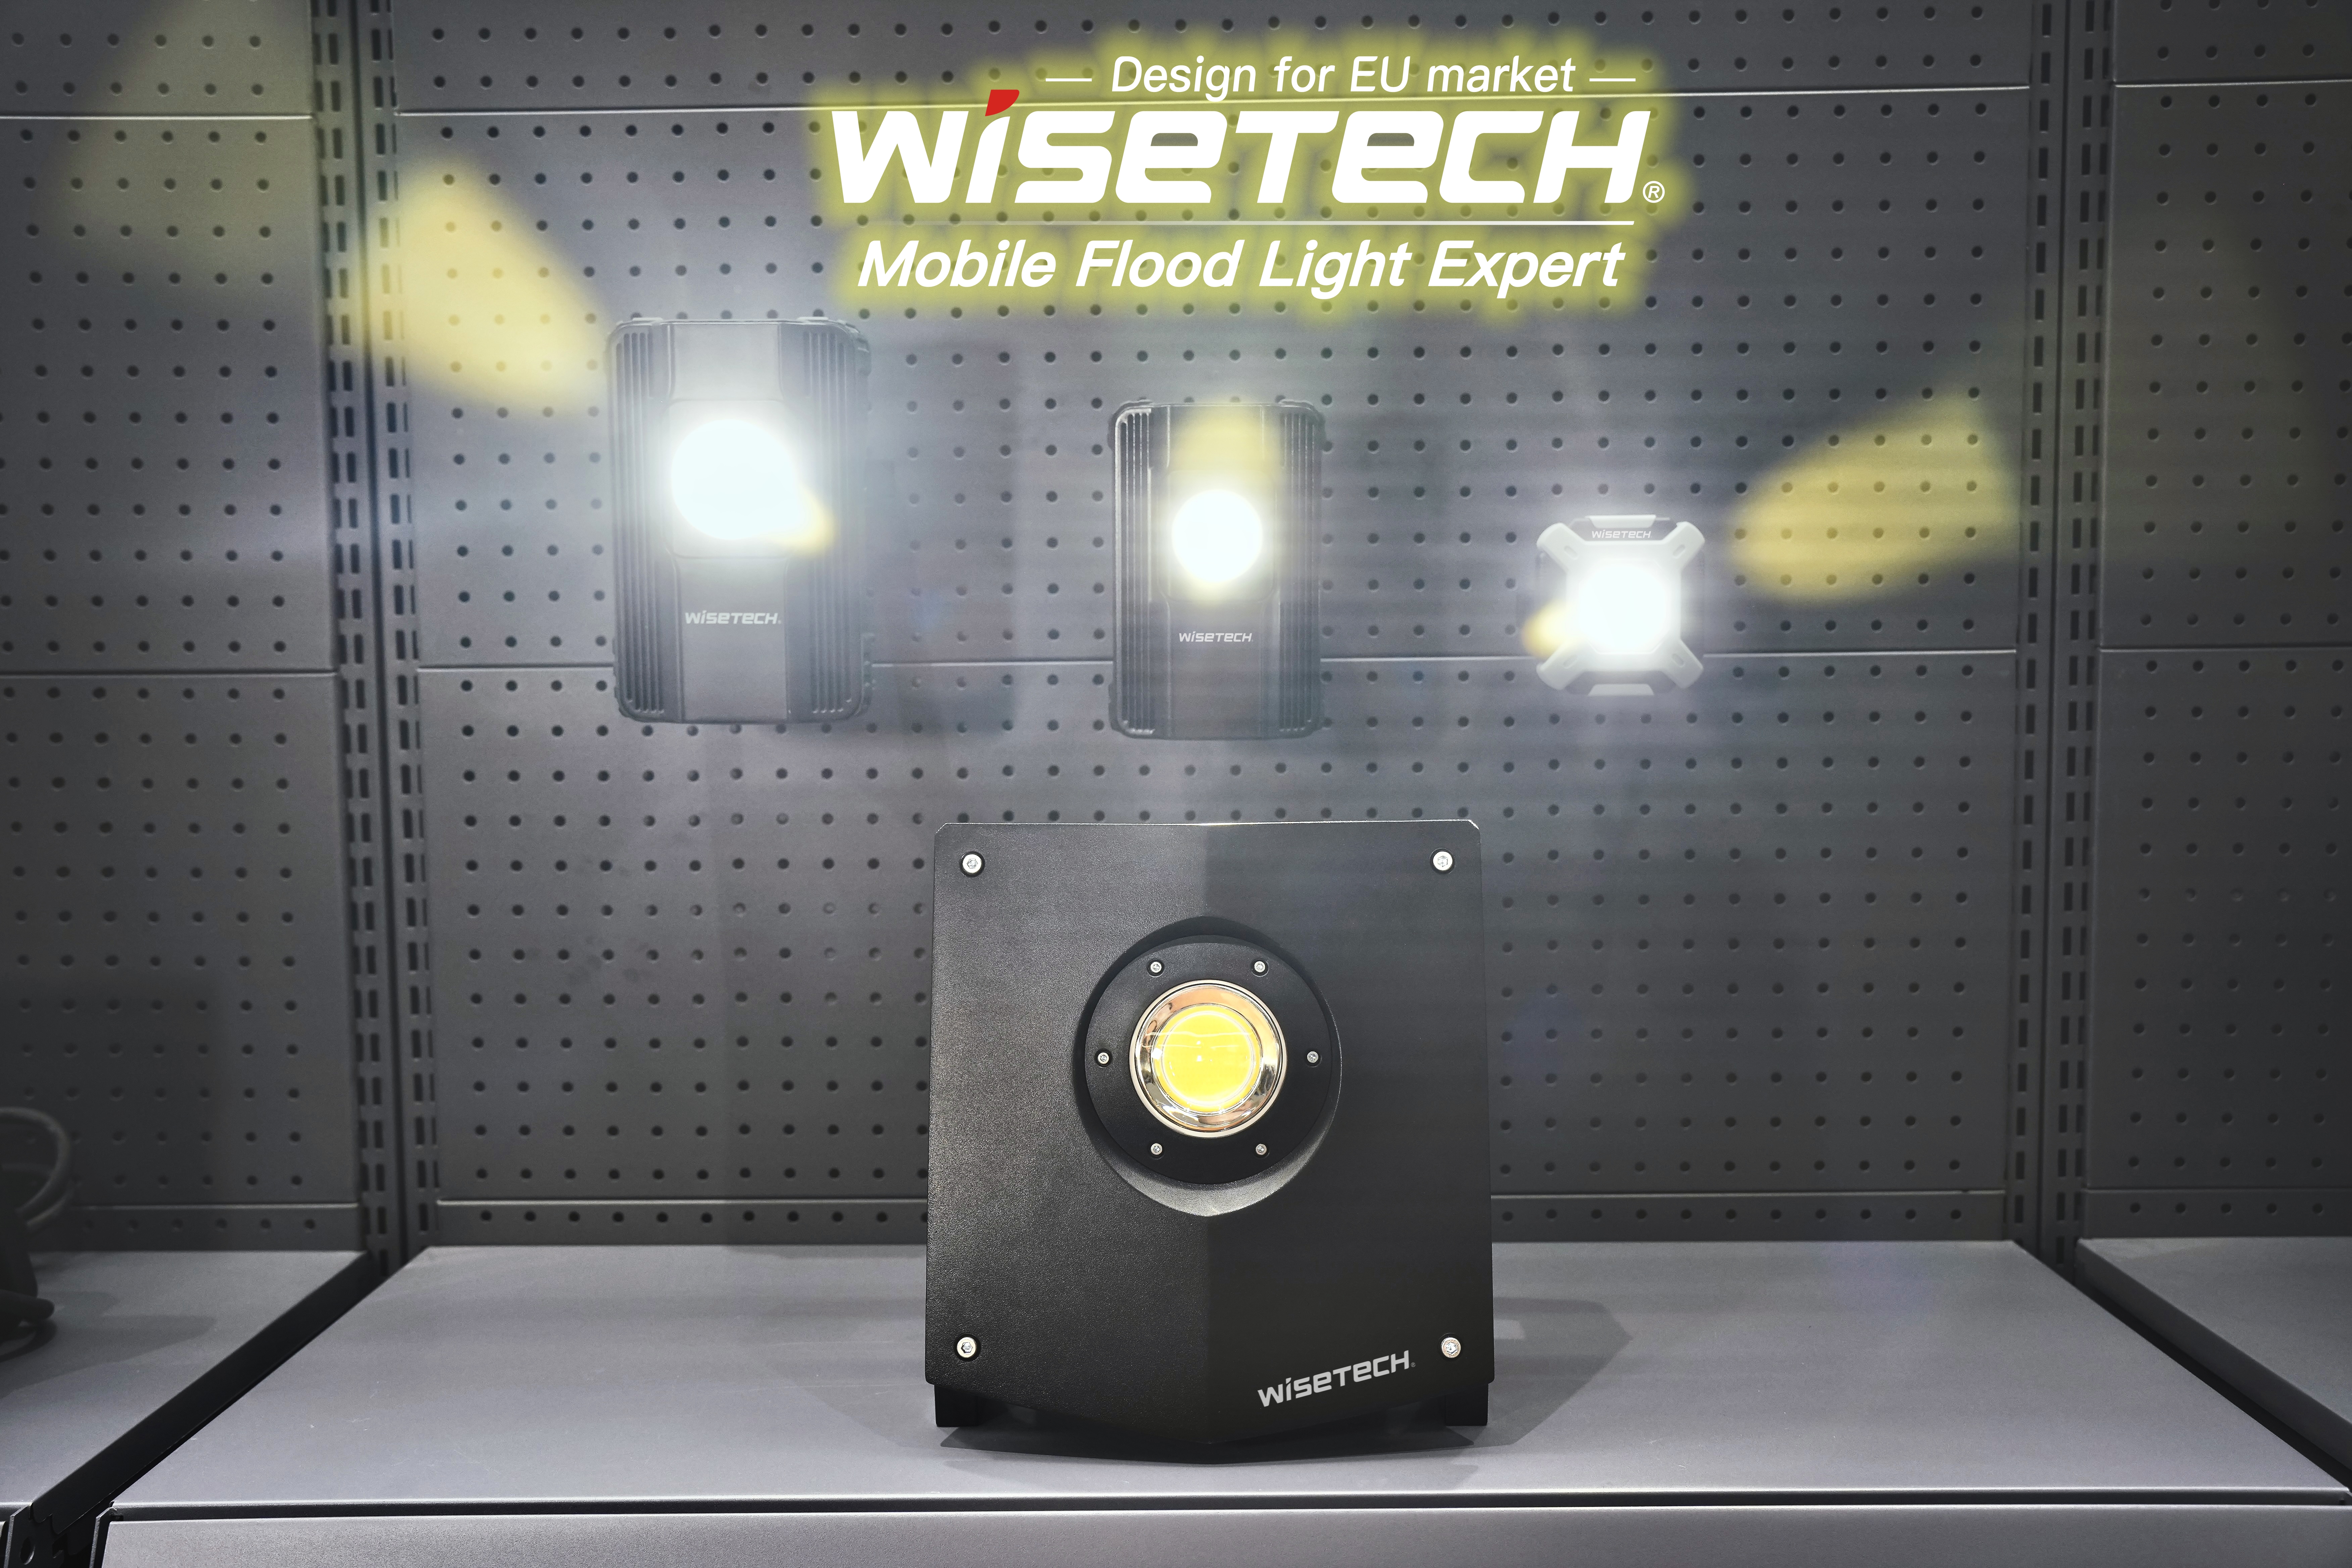 Dizaino apdovanojimus pelniusi 18 V keičiamo įrankio baterijomis maitinama mobilioji darbo lemputė WISETECH.